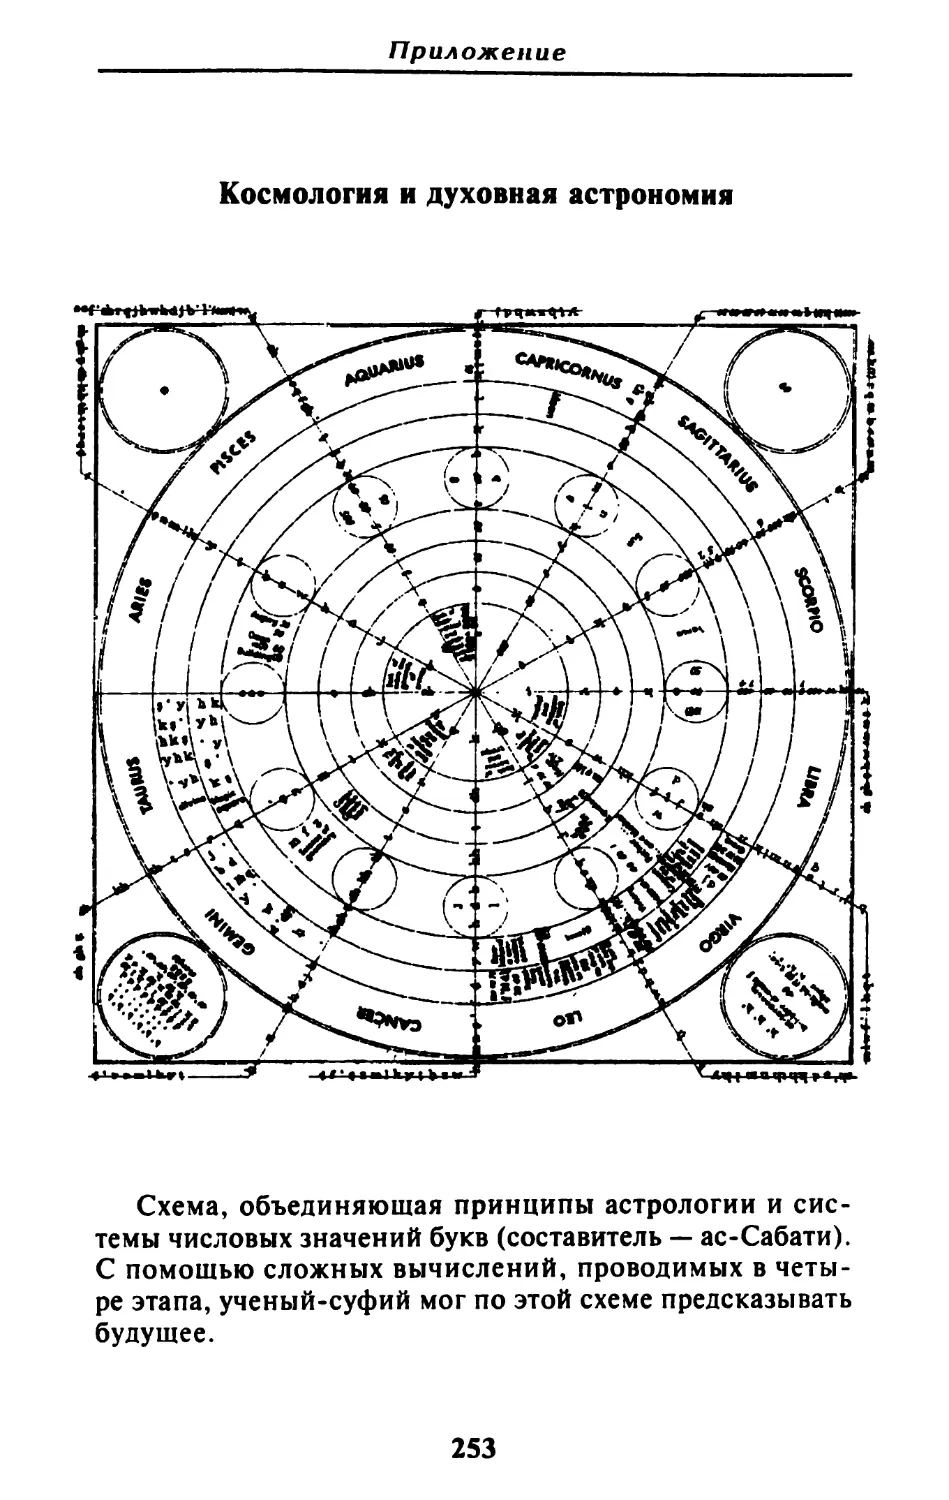 Космология и духовная астрономия